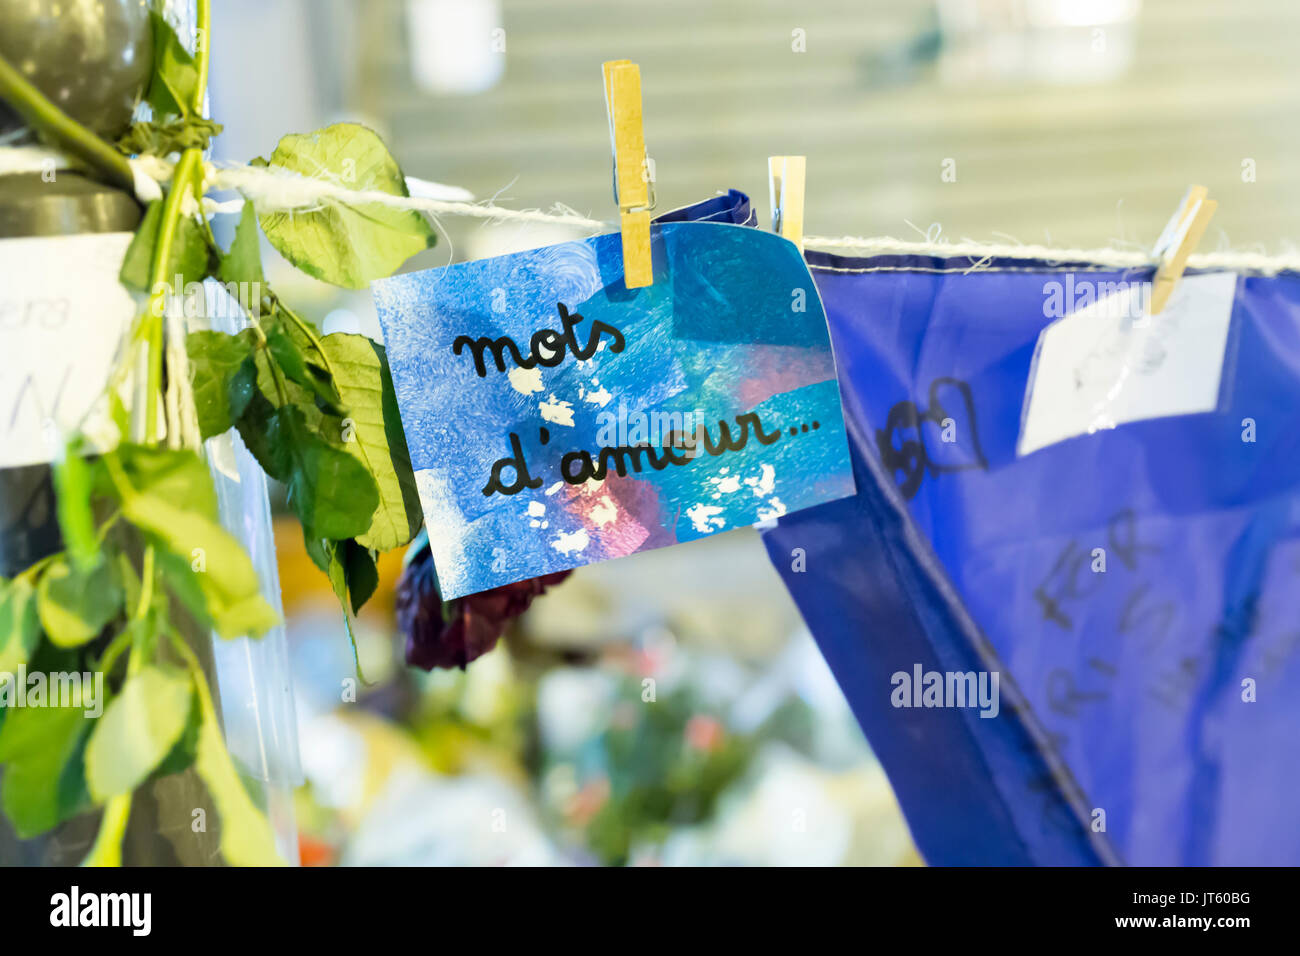 Eine Notiz mit Worten der Liebe, mots d'Amour. Spontane Hommage an die Opfer der Terroranschläge in Paris, den 13. November 2015. Stockfoto